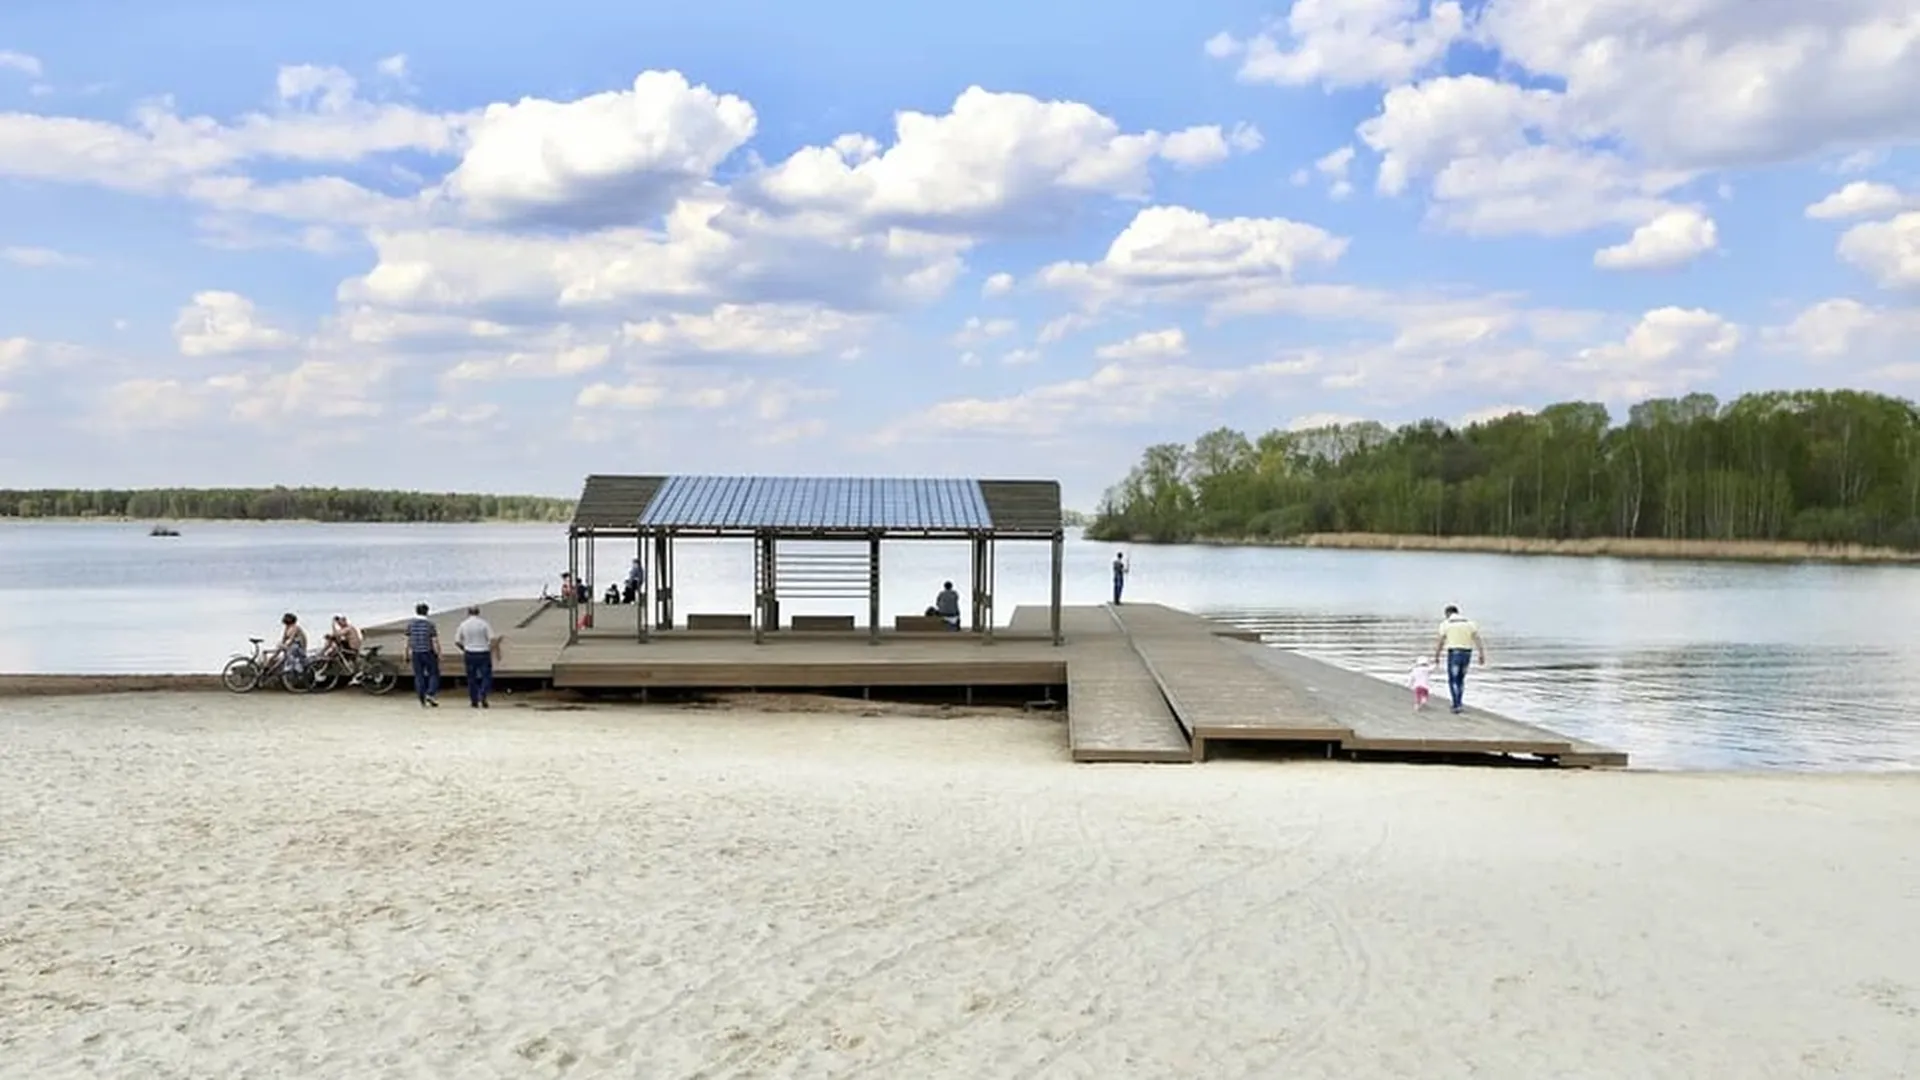 Новый прогулочный маршрут и пляж появятся на набережной озера Сенеж в 2020 году